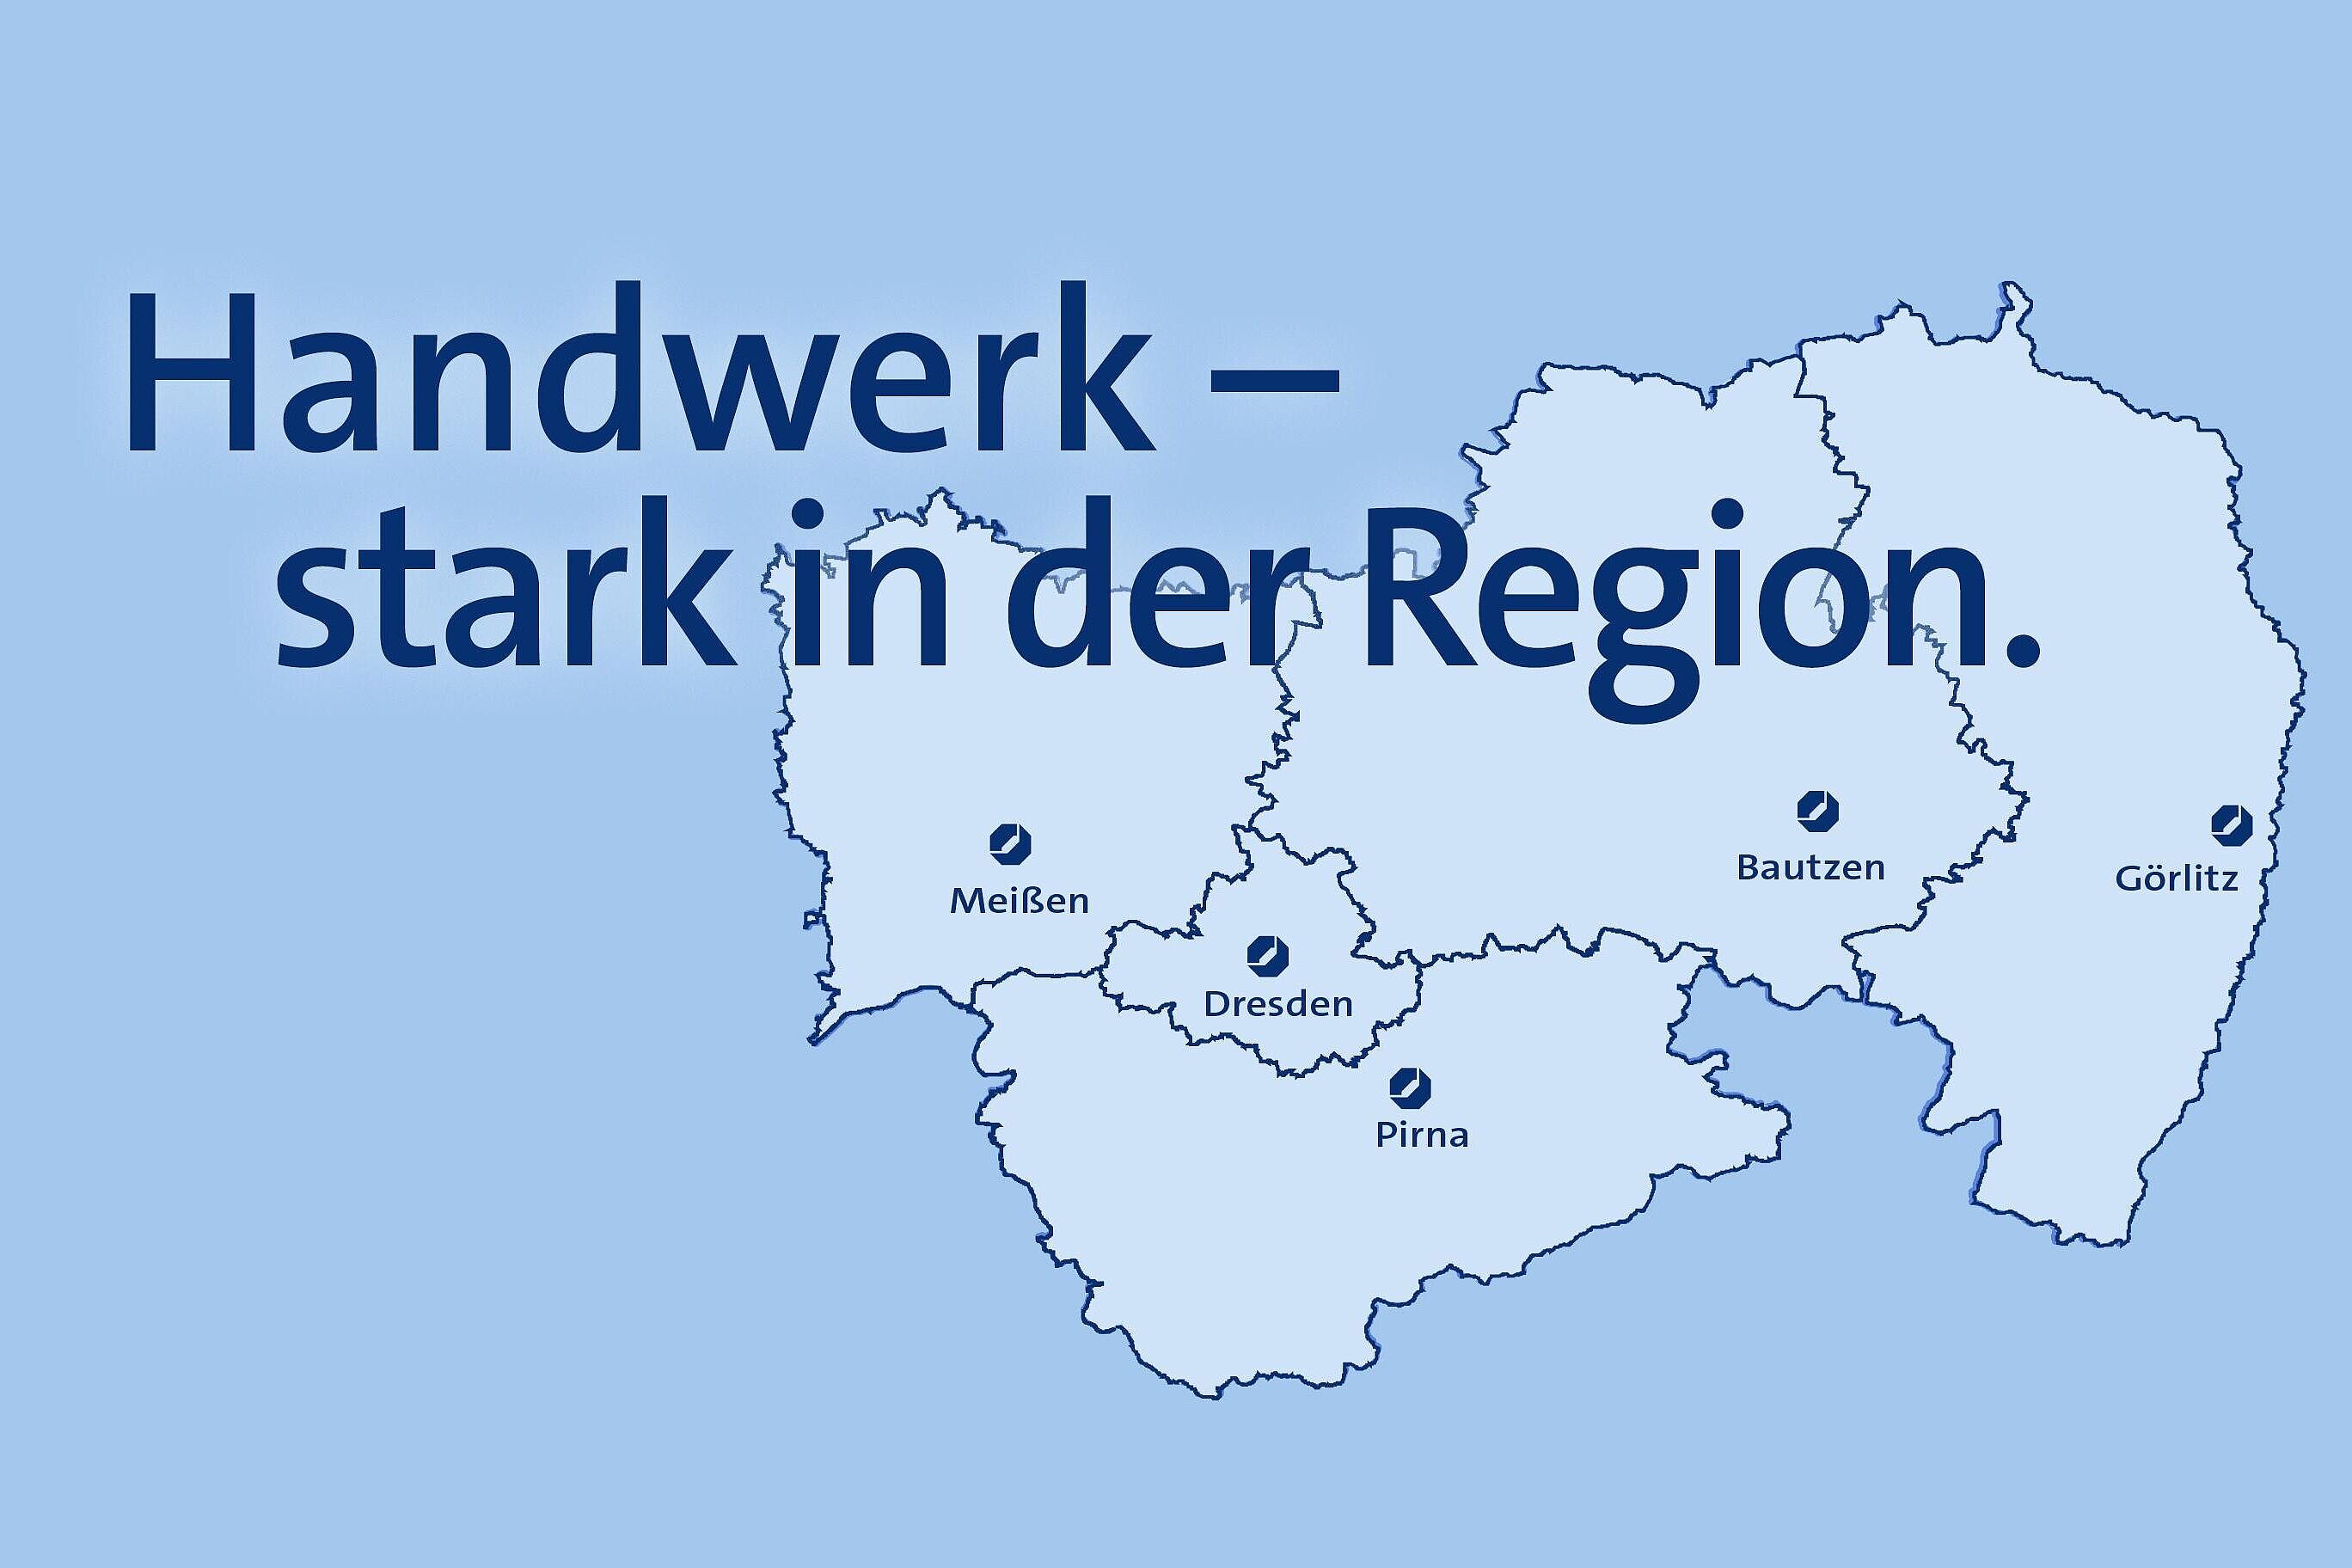 Grafik vom Landkreis Dresden mit hervorgehobenen Standorten Meißen, Dresden, Pirna, Bautzen, Görlitz. Darüber der Schriftzug \"Handwerk – stark in der Region.\"